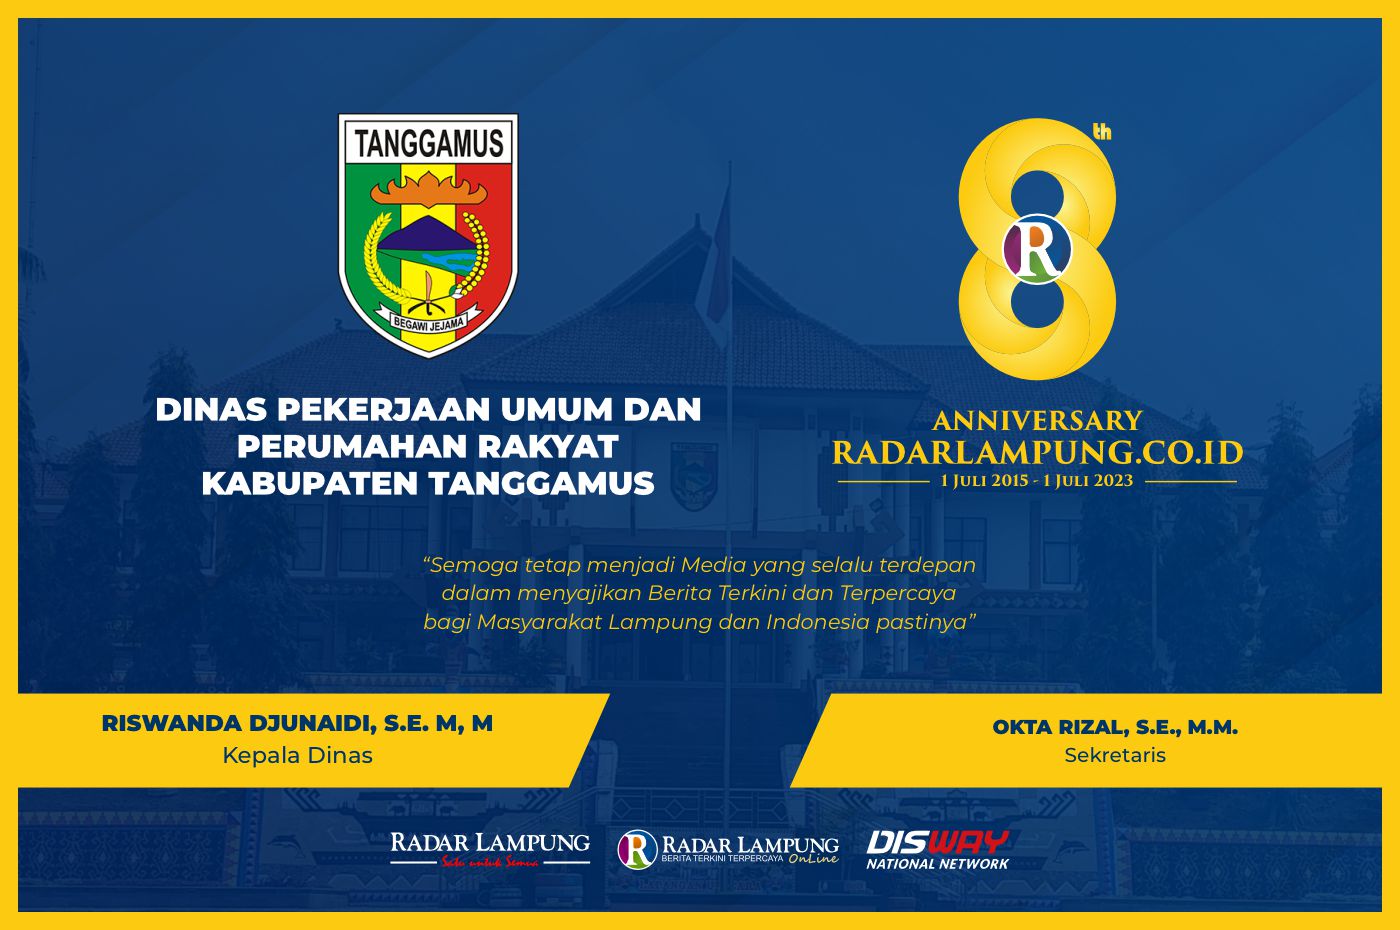 Dinas Pekerjaan Umum dan Perumahan Rakyat Kabupaten Tanggamus: Selamat Milad Radar Lampung Online ke-8